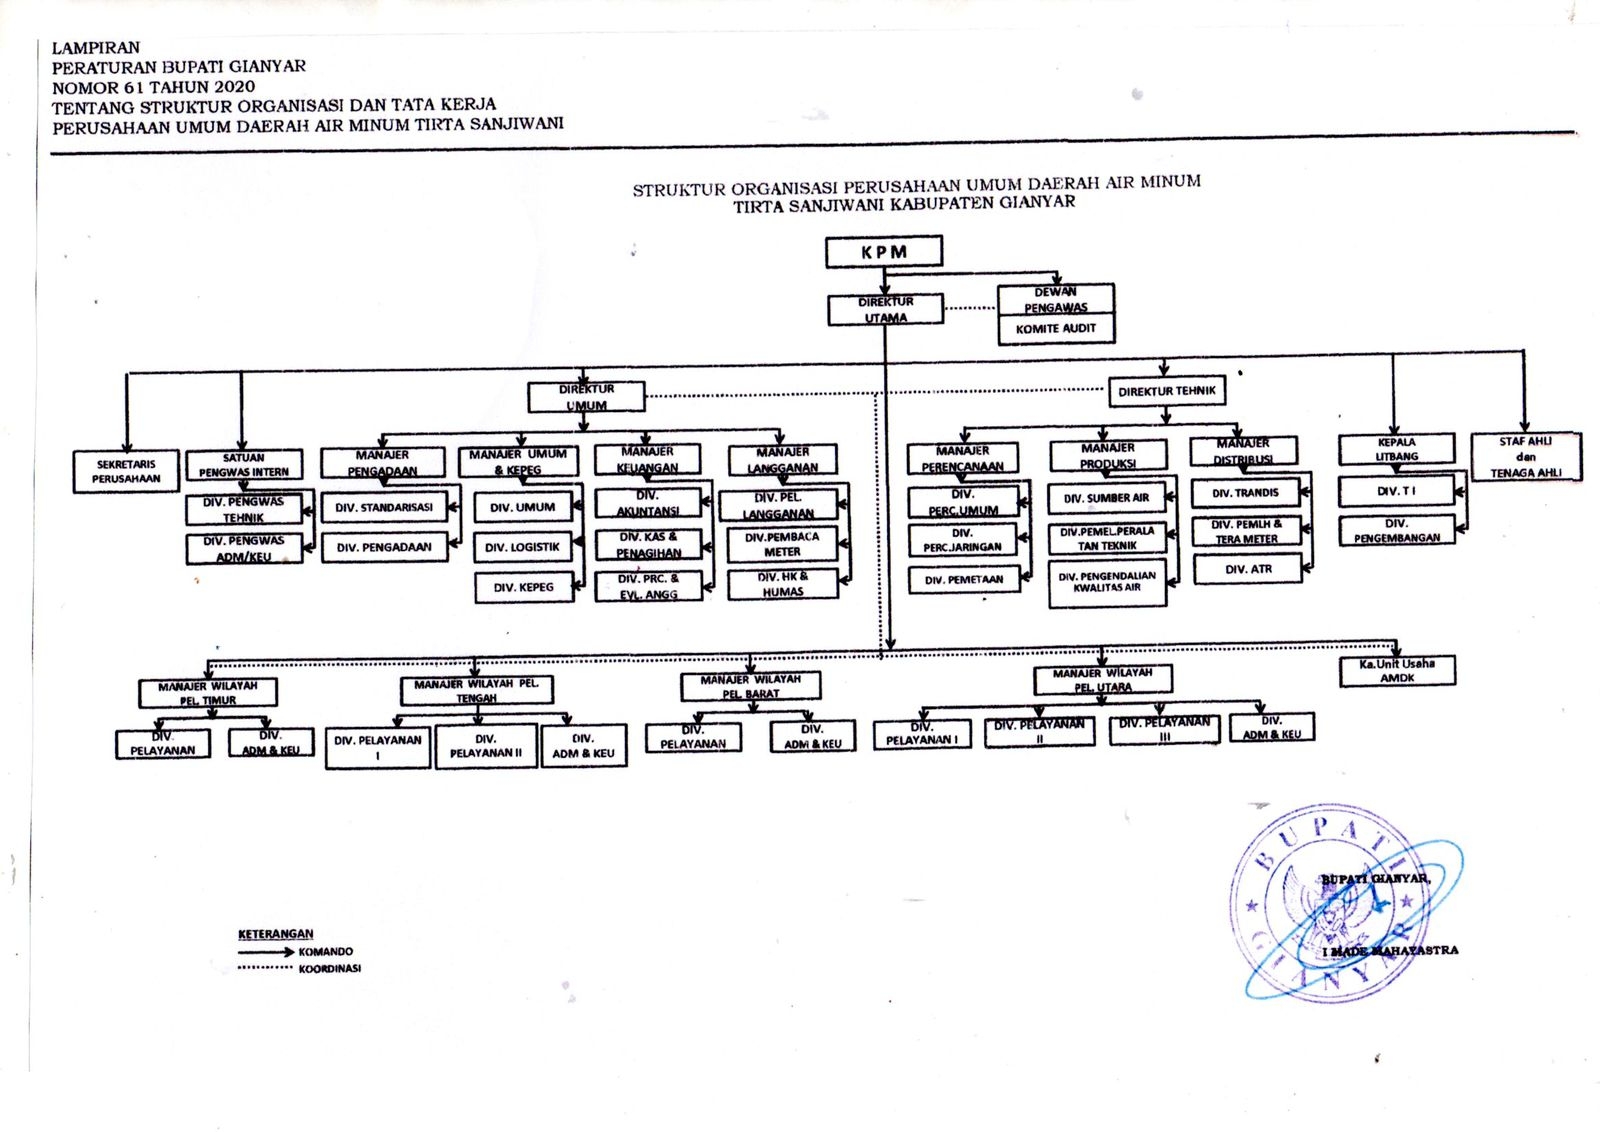 Struktur Organisasi,PDAM Kabupaten Gianyar,PDAM Gianyar,PDAM